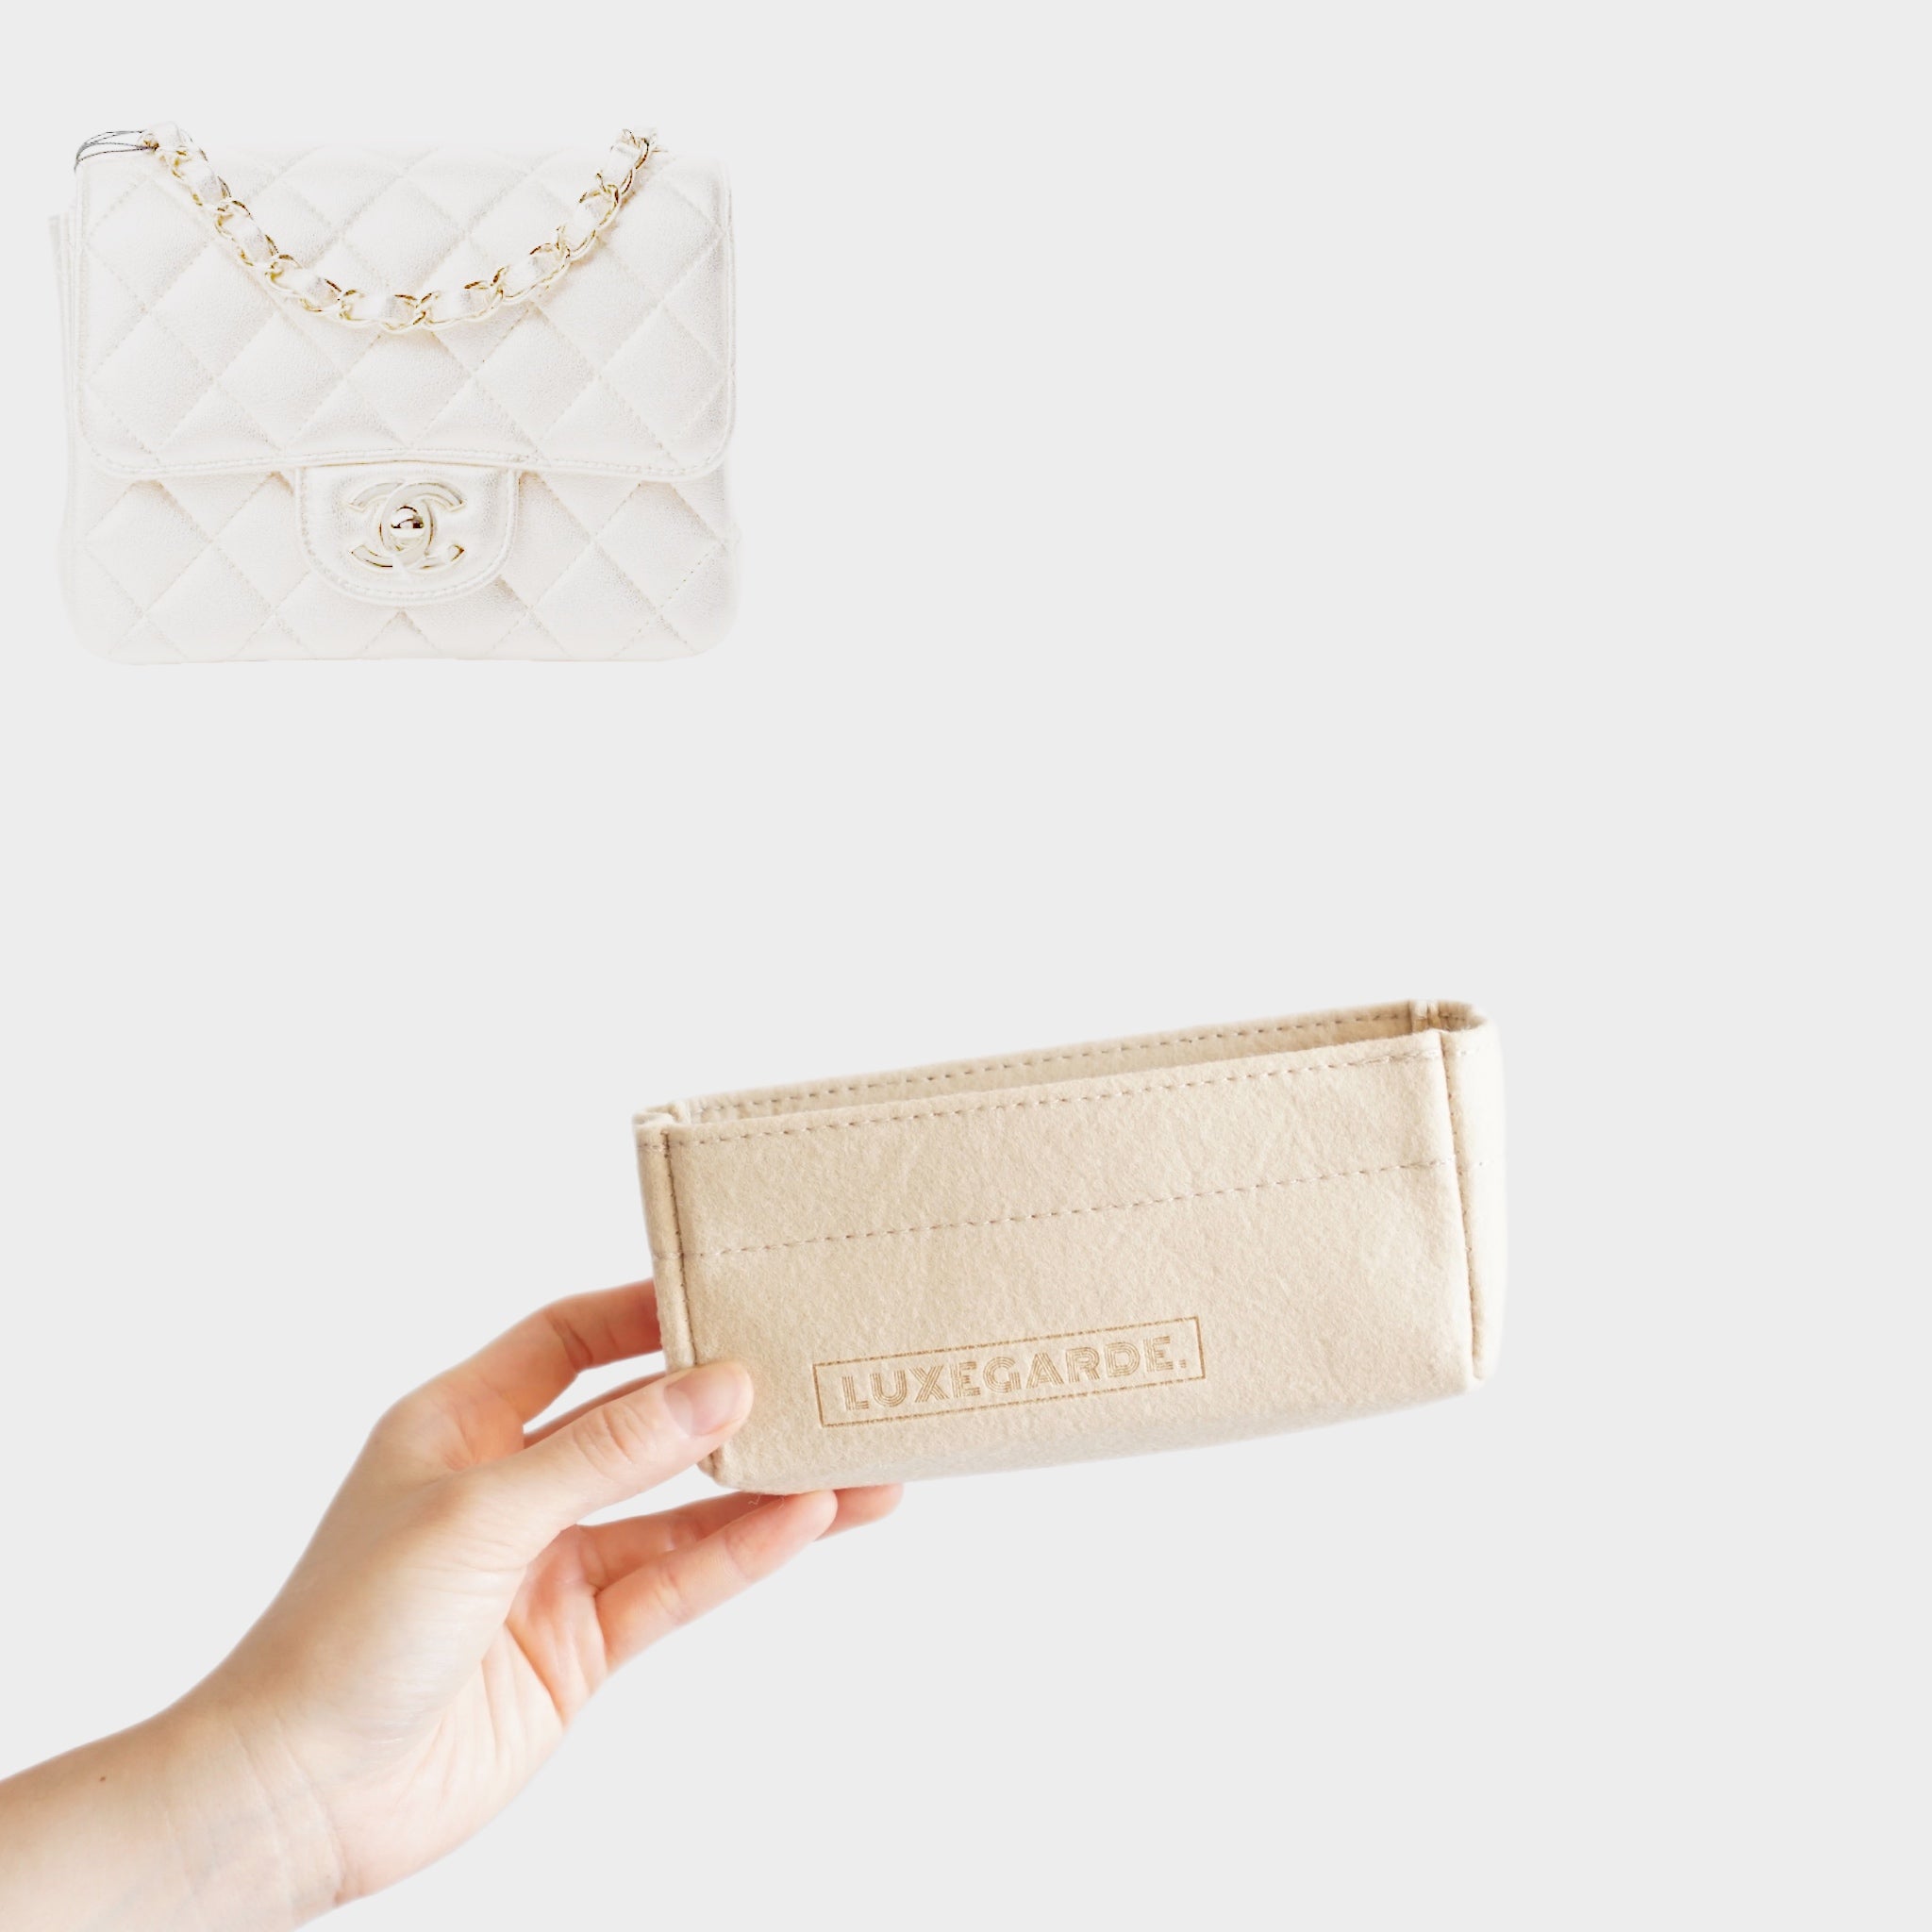 Lckaey Purse Organizer Insert for Chanel 19 Small bag with Side Zipper  Pocket Handbag Chanel Maxi Flip bag Organizer Y002beige-M